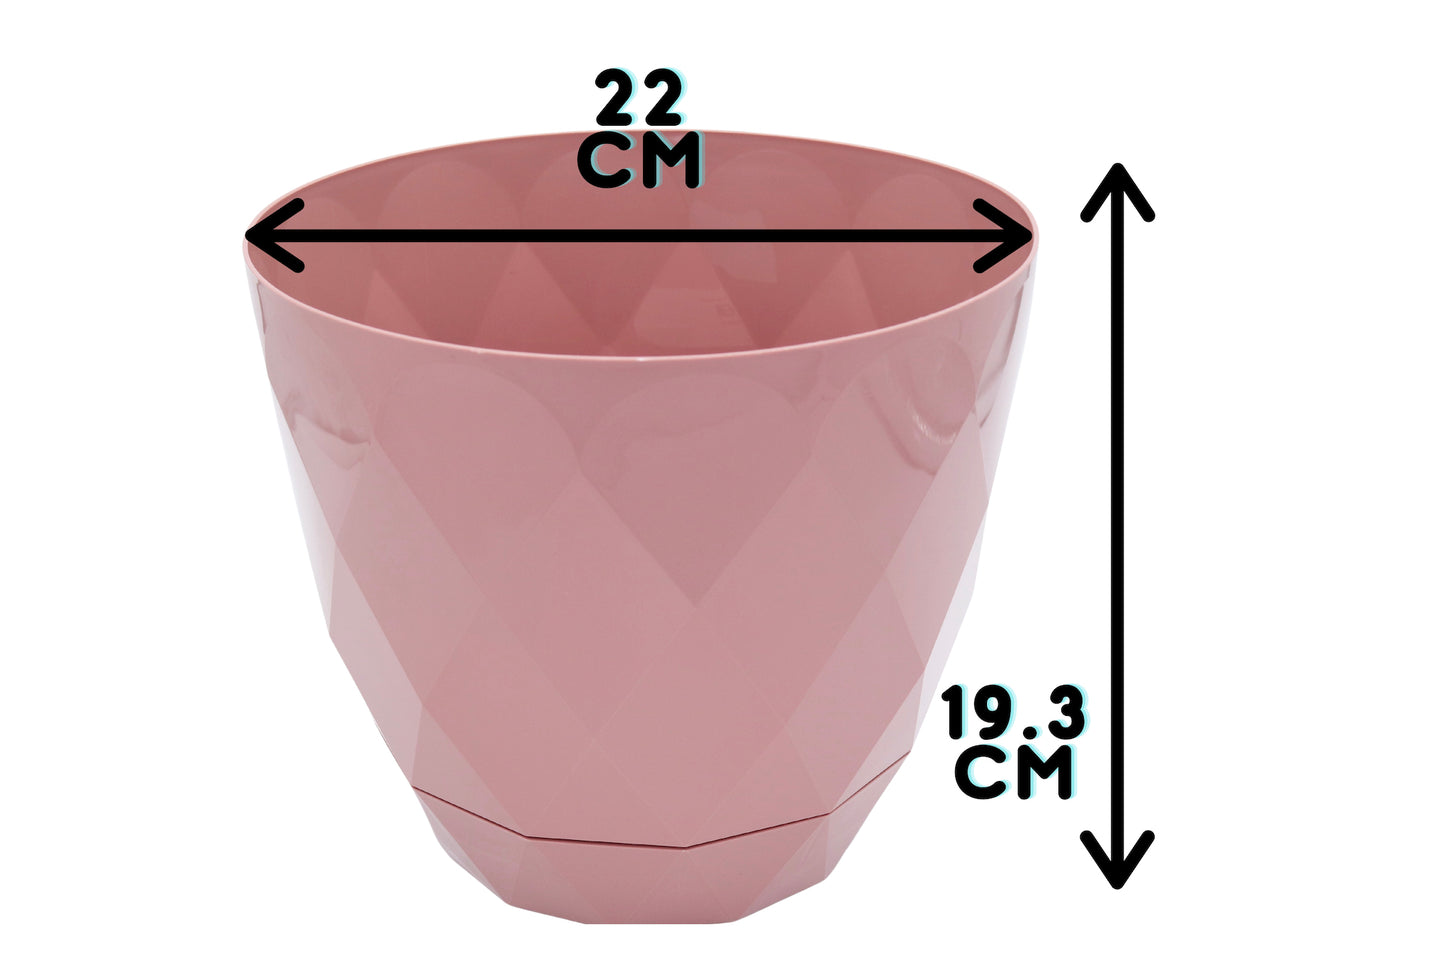 measurements of 22cm plant pot